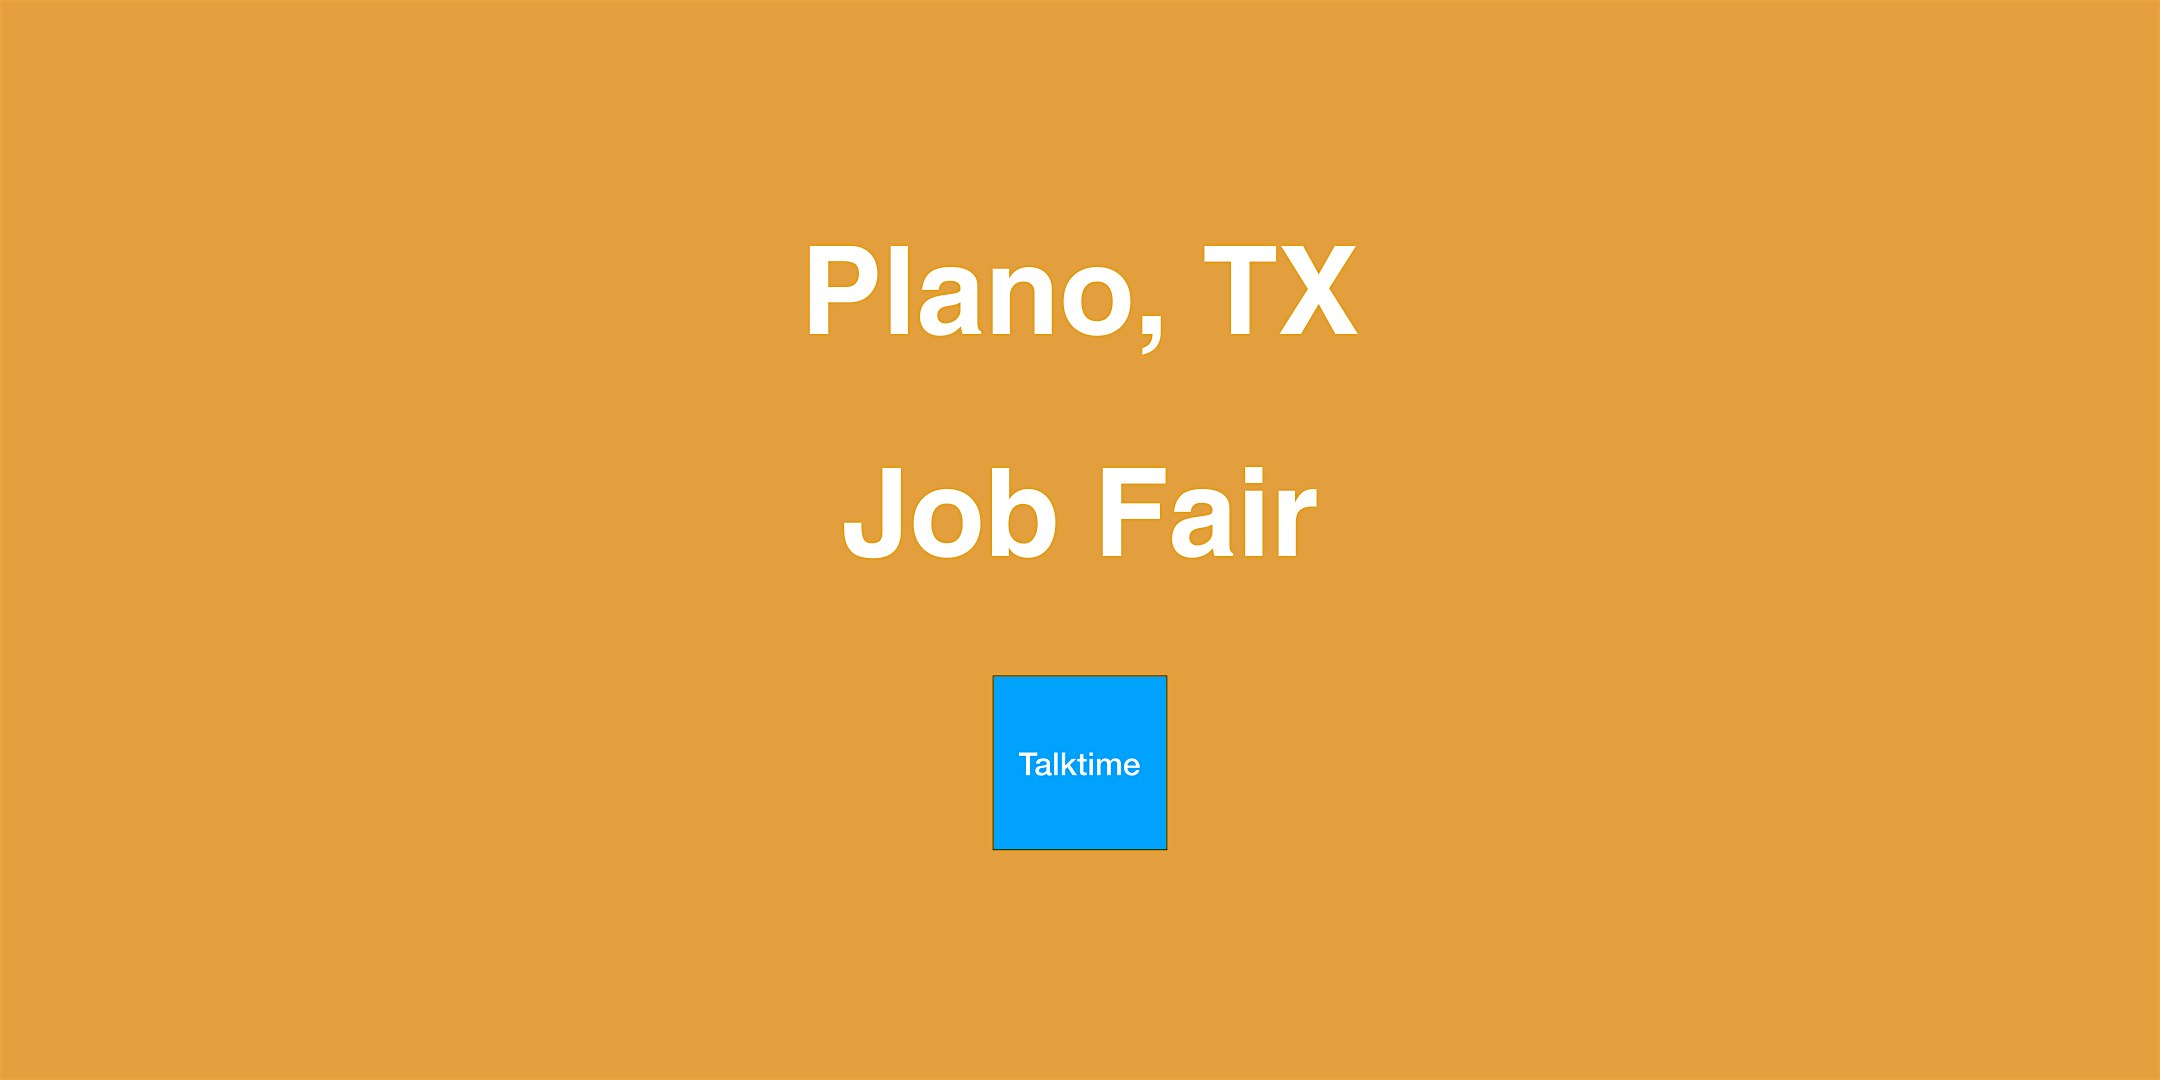 Job Fair - Plano